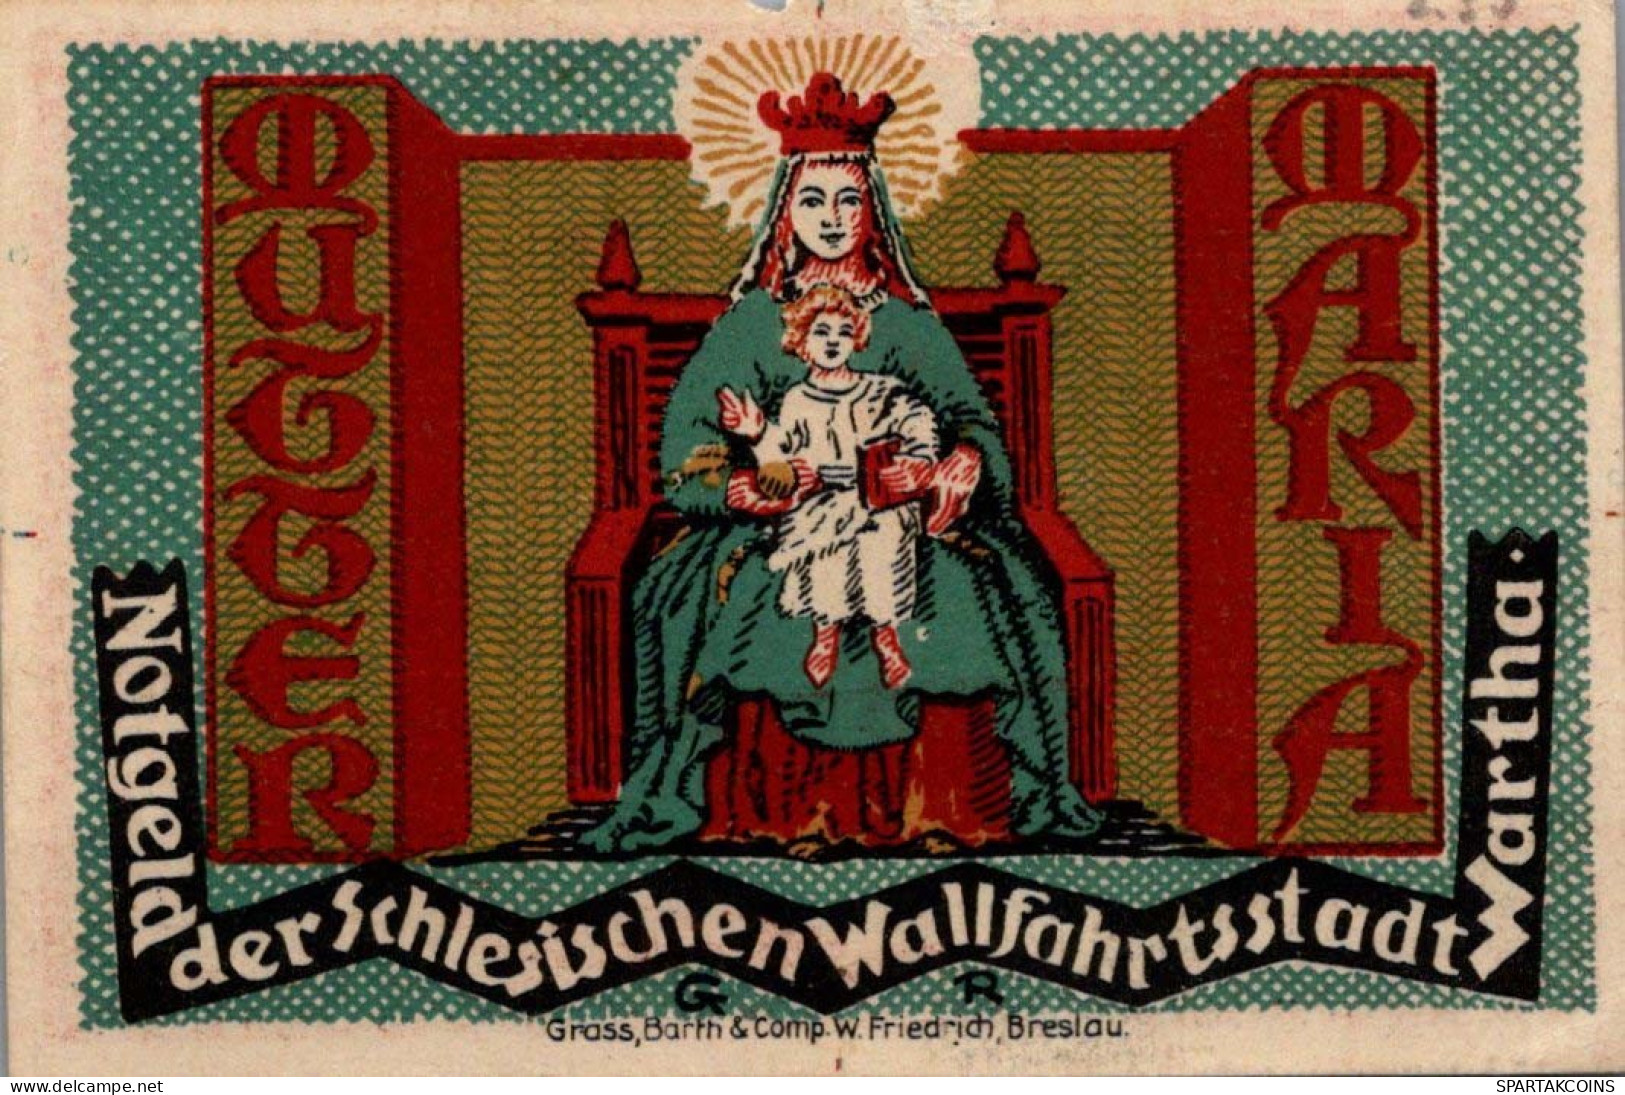 50 PFENNIG 1921 Stadt Wartha DEUTSCHLAND Notgeld Papiergeld Banknote #PG054 - [11] Local Banknote Issues